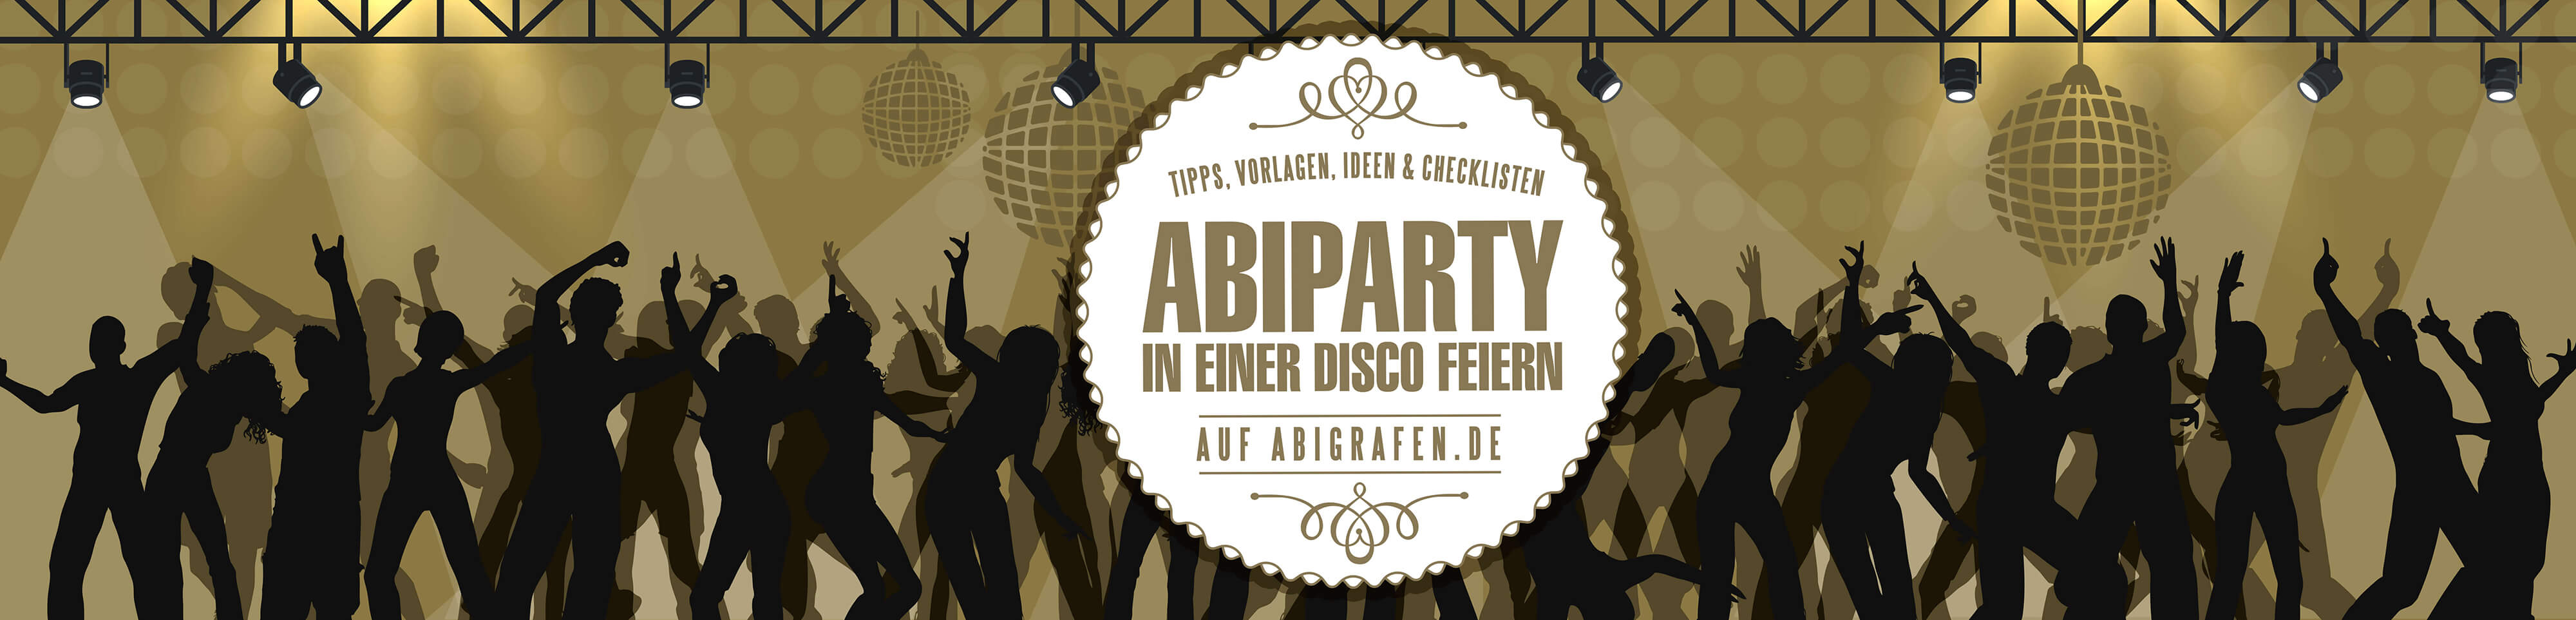 Tipps, Anleitungen & Downloads für das Vofi-Team: Abiparty in der Discothek vorbereiten & planen